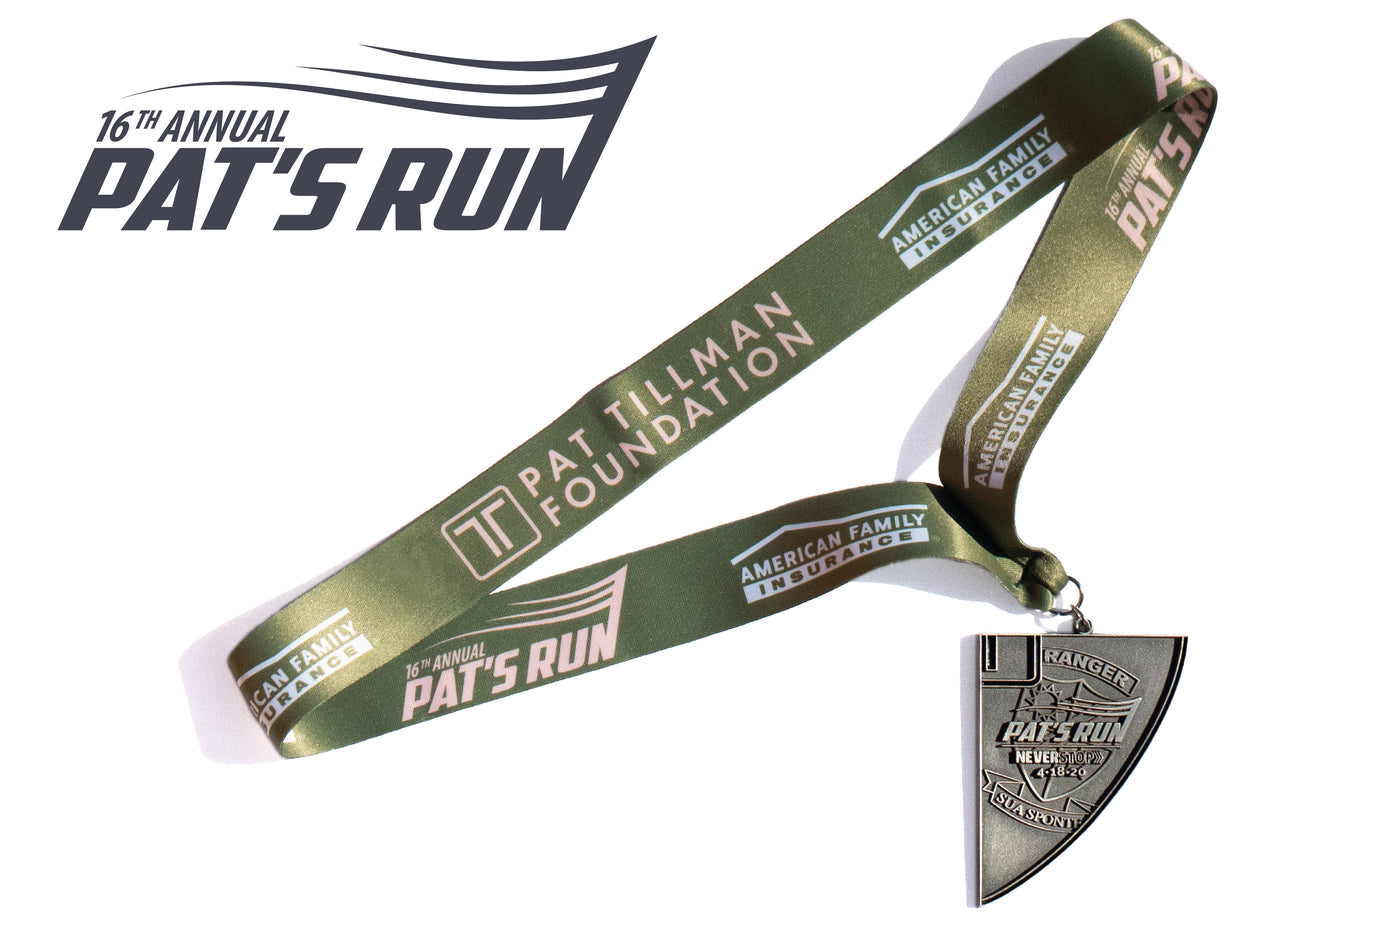 2020 Pat's Run Finisher Medal